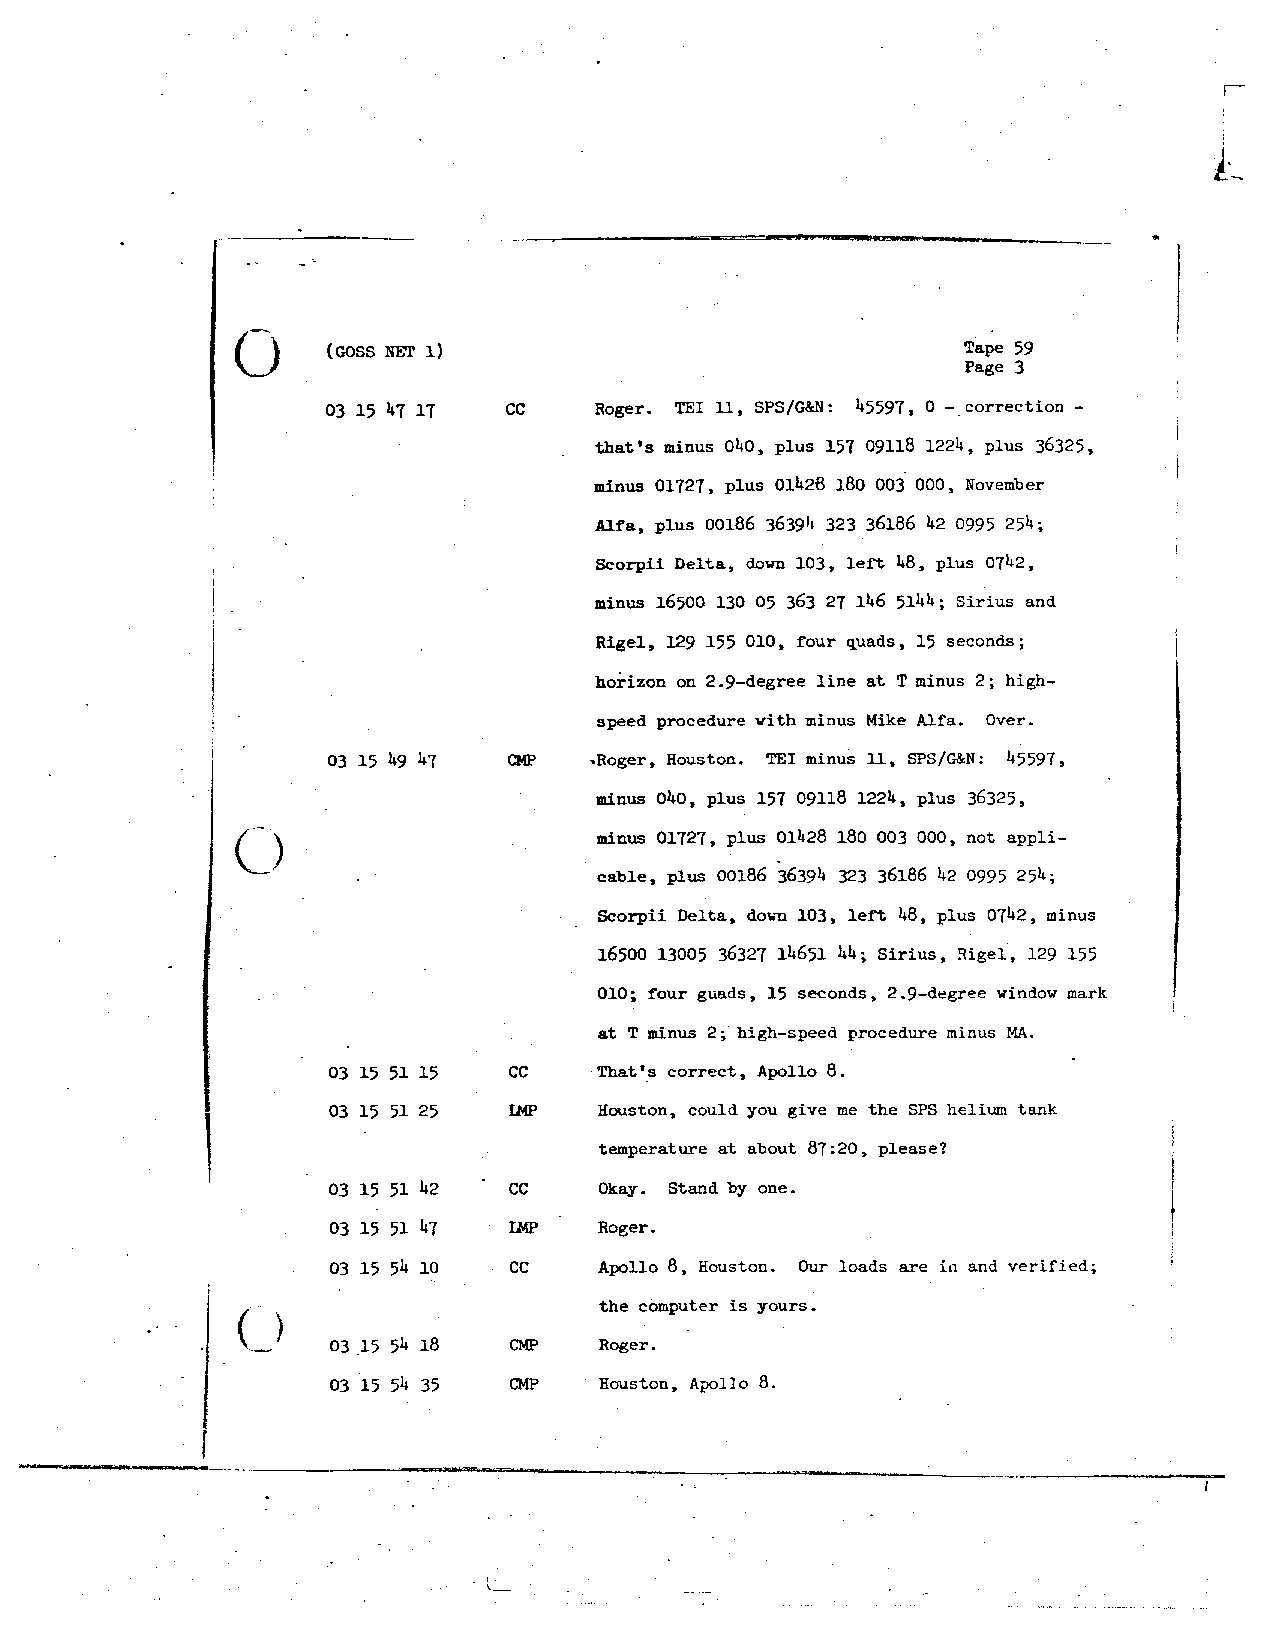 Page 472 of Apollo 8’s original transcript